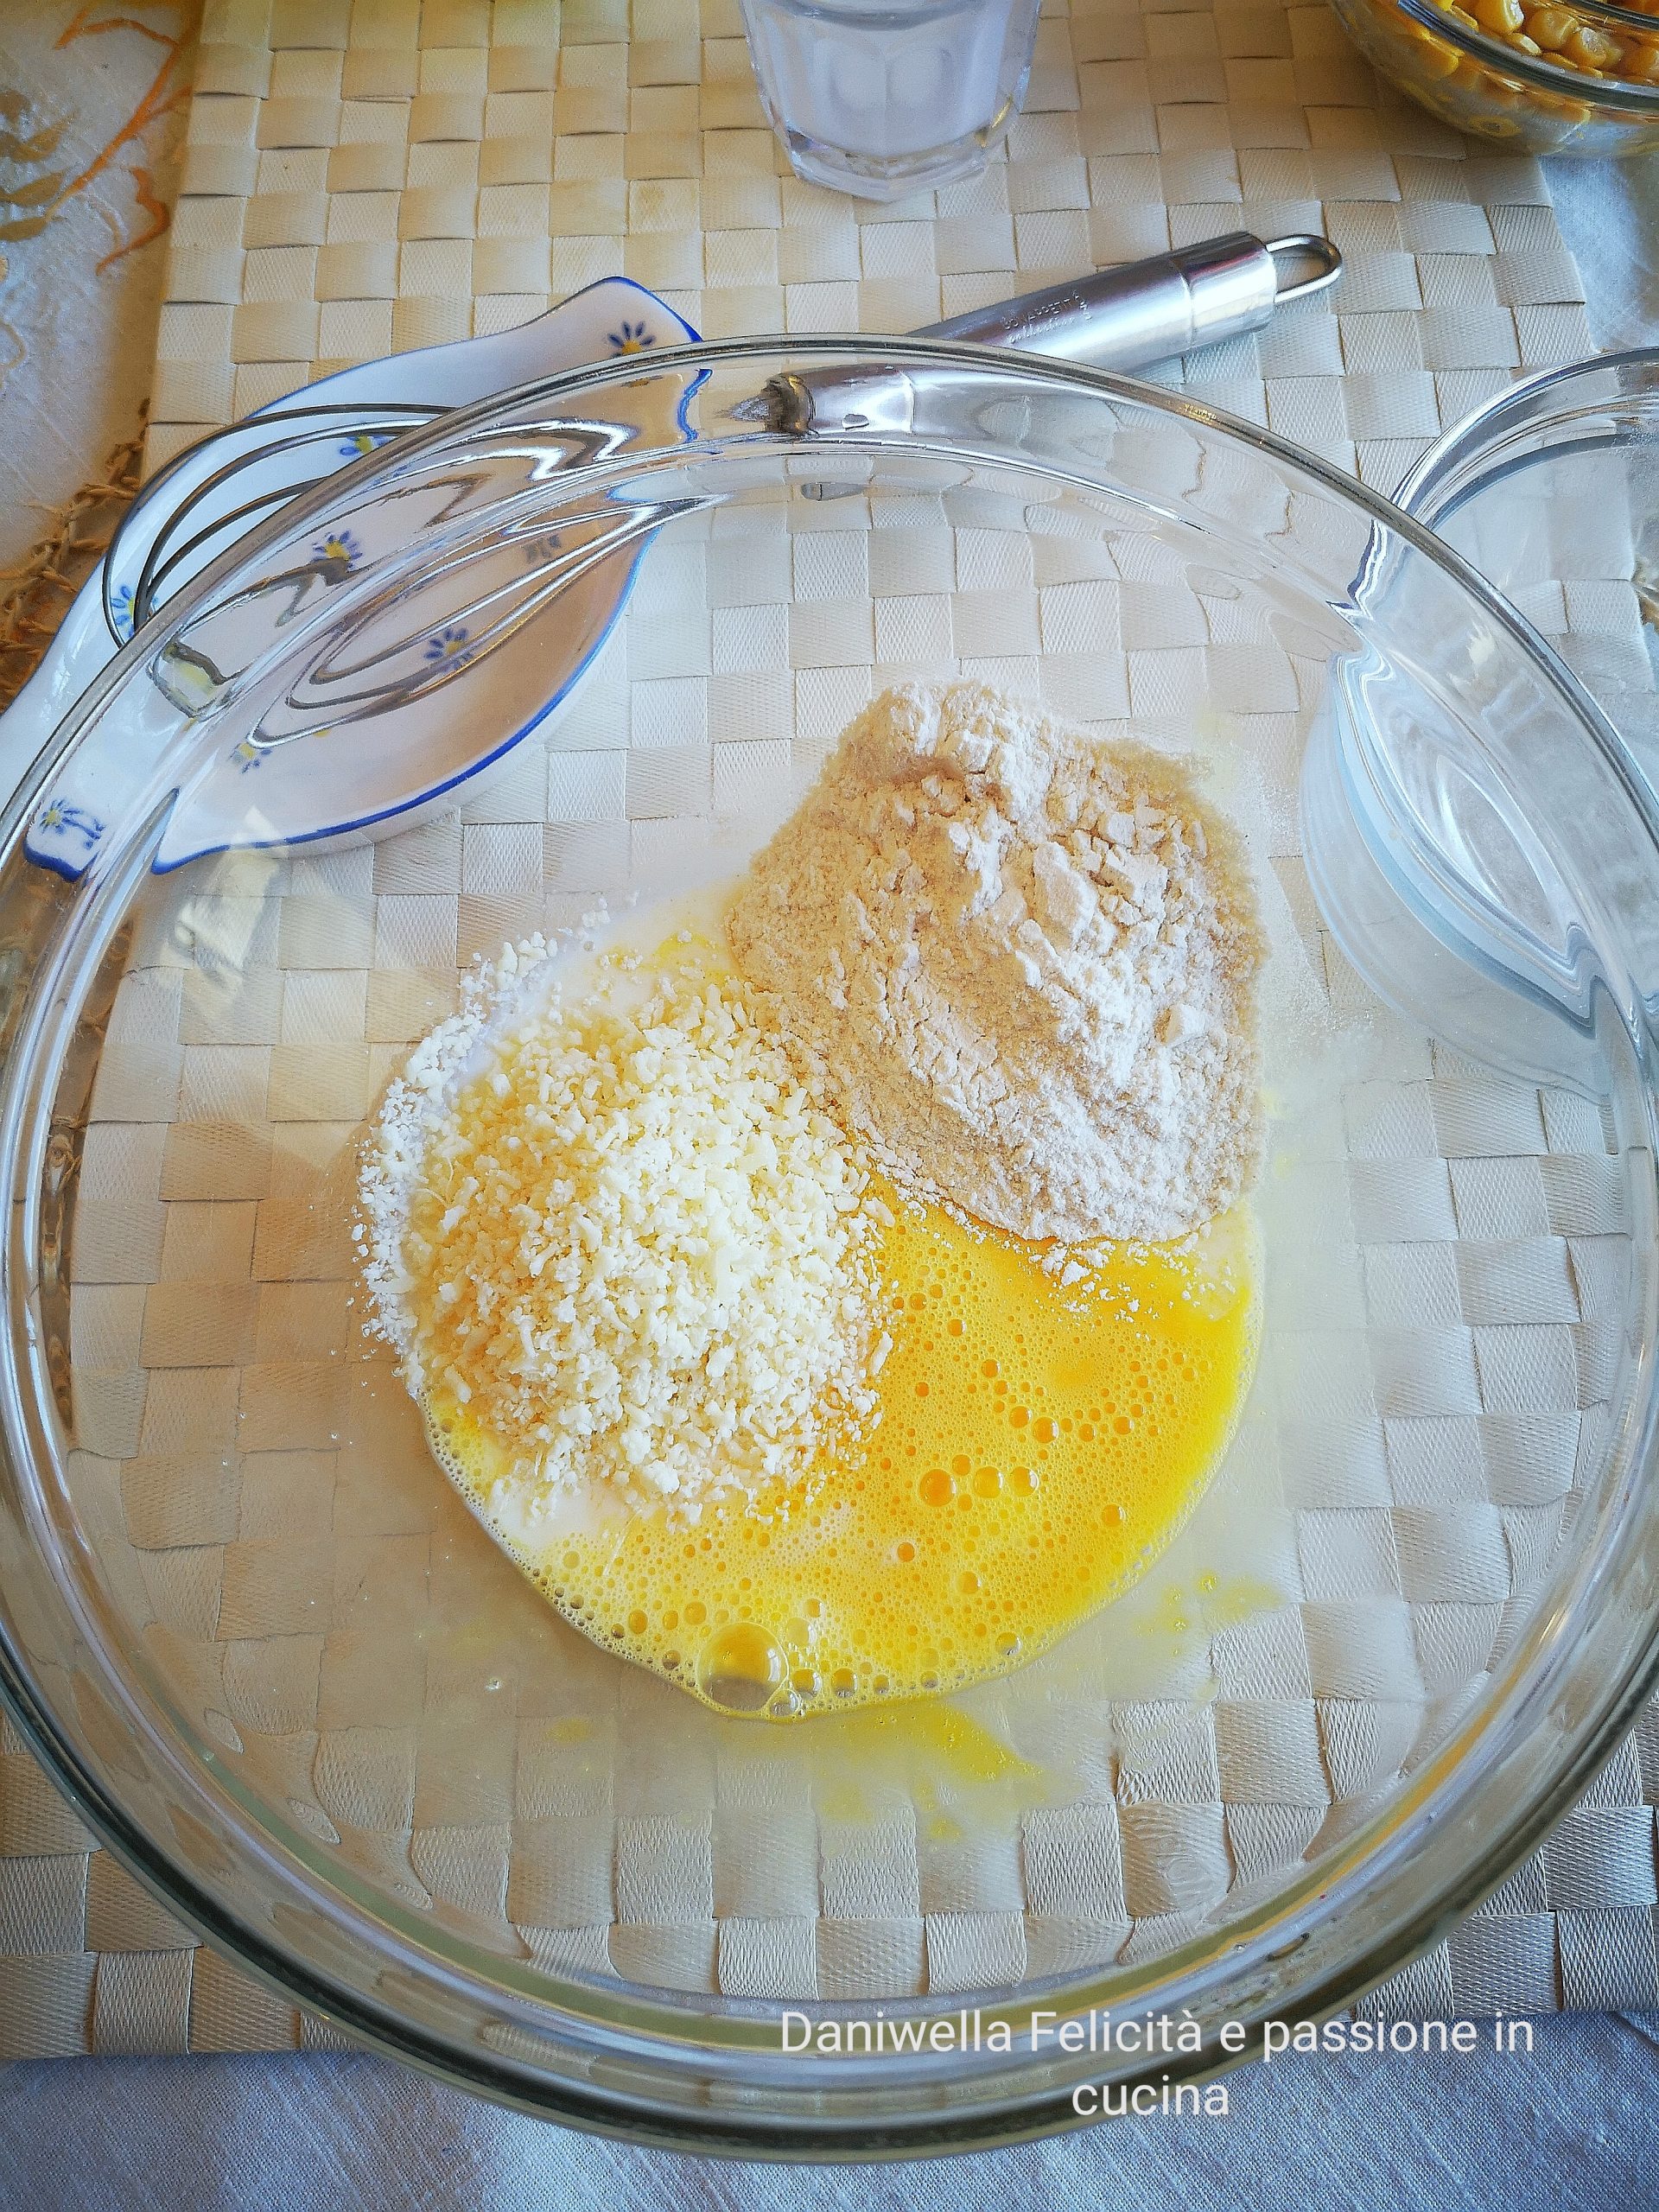 Sbattete l’uovo in una ciotola, aggiungete la farina, il latte, il formaggio grattugiato e amalgamate fino a formare una pastella liscia.